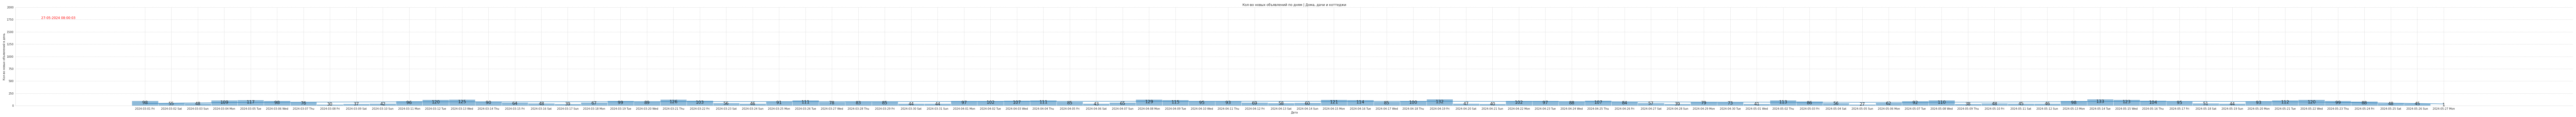 Гистограмма, показывающая количество предложений домов, дач и коттеджей в Крыму по дням c 2024-04-01 по сегодняшний день